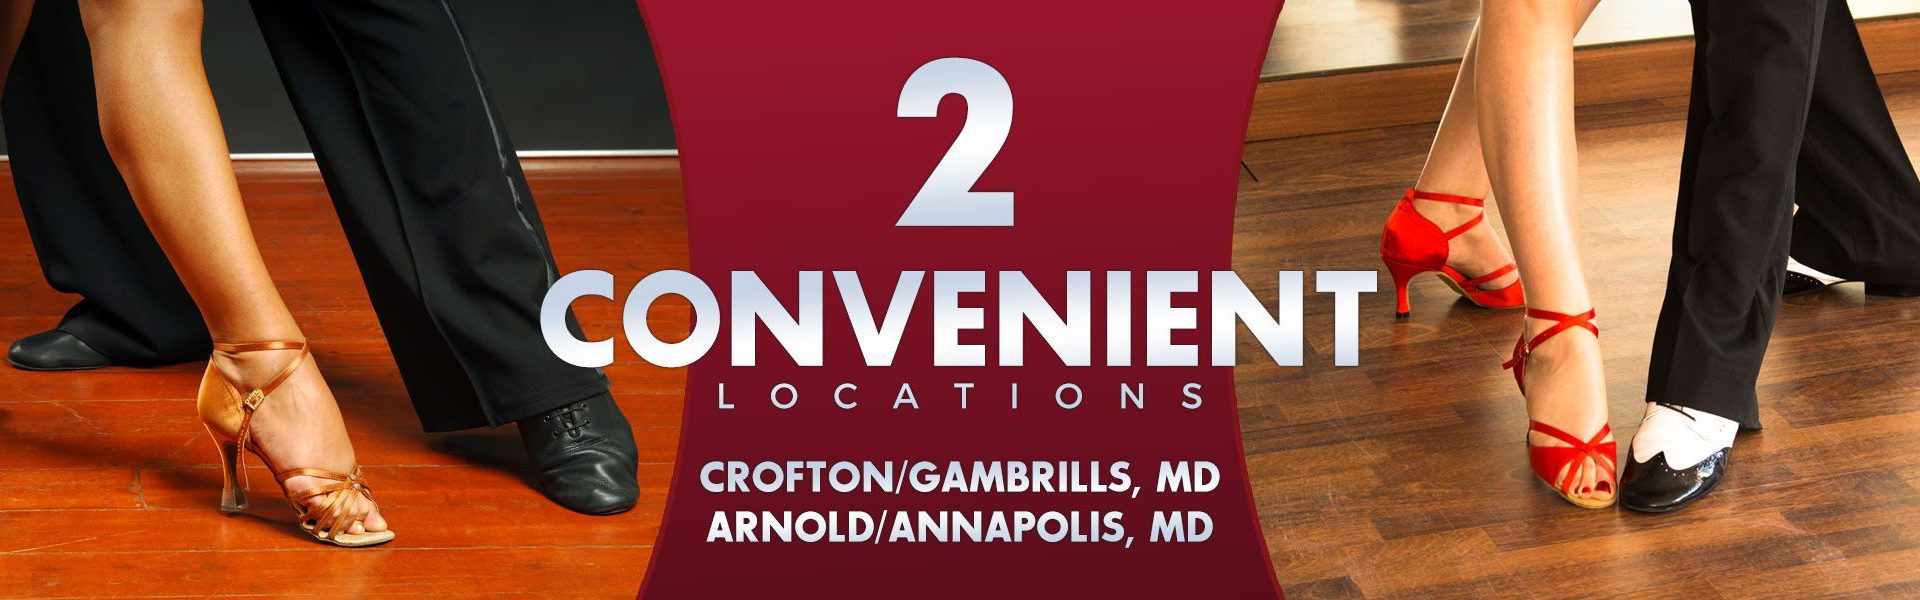 2 Convenient Locations